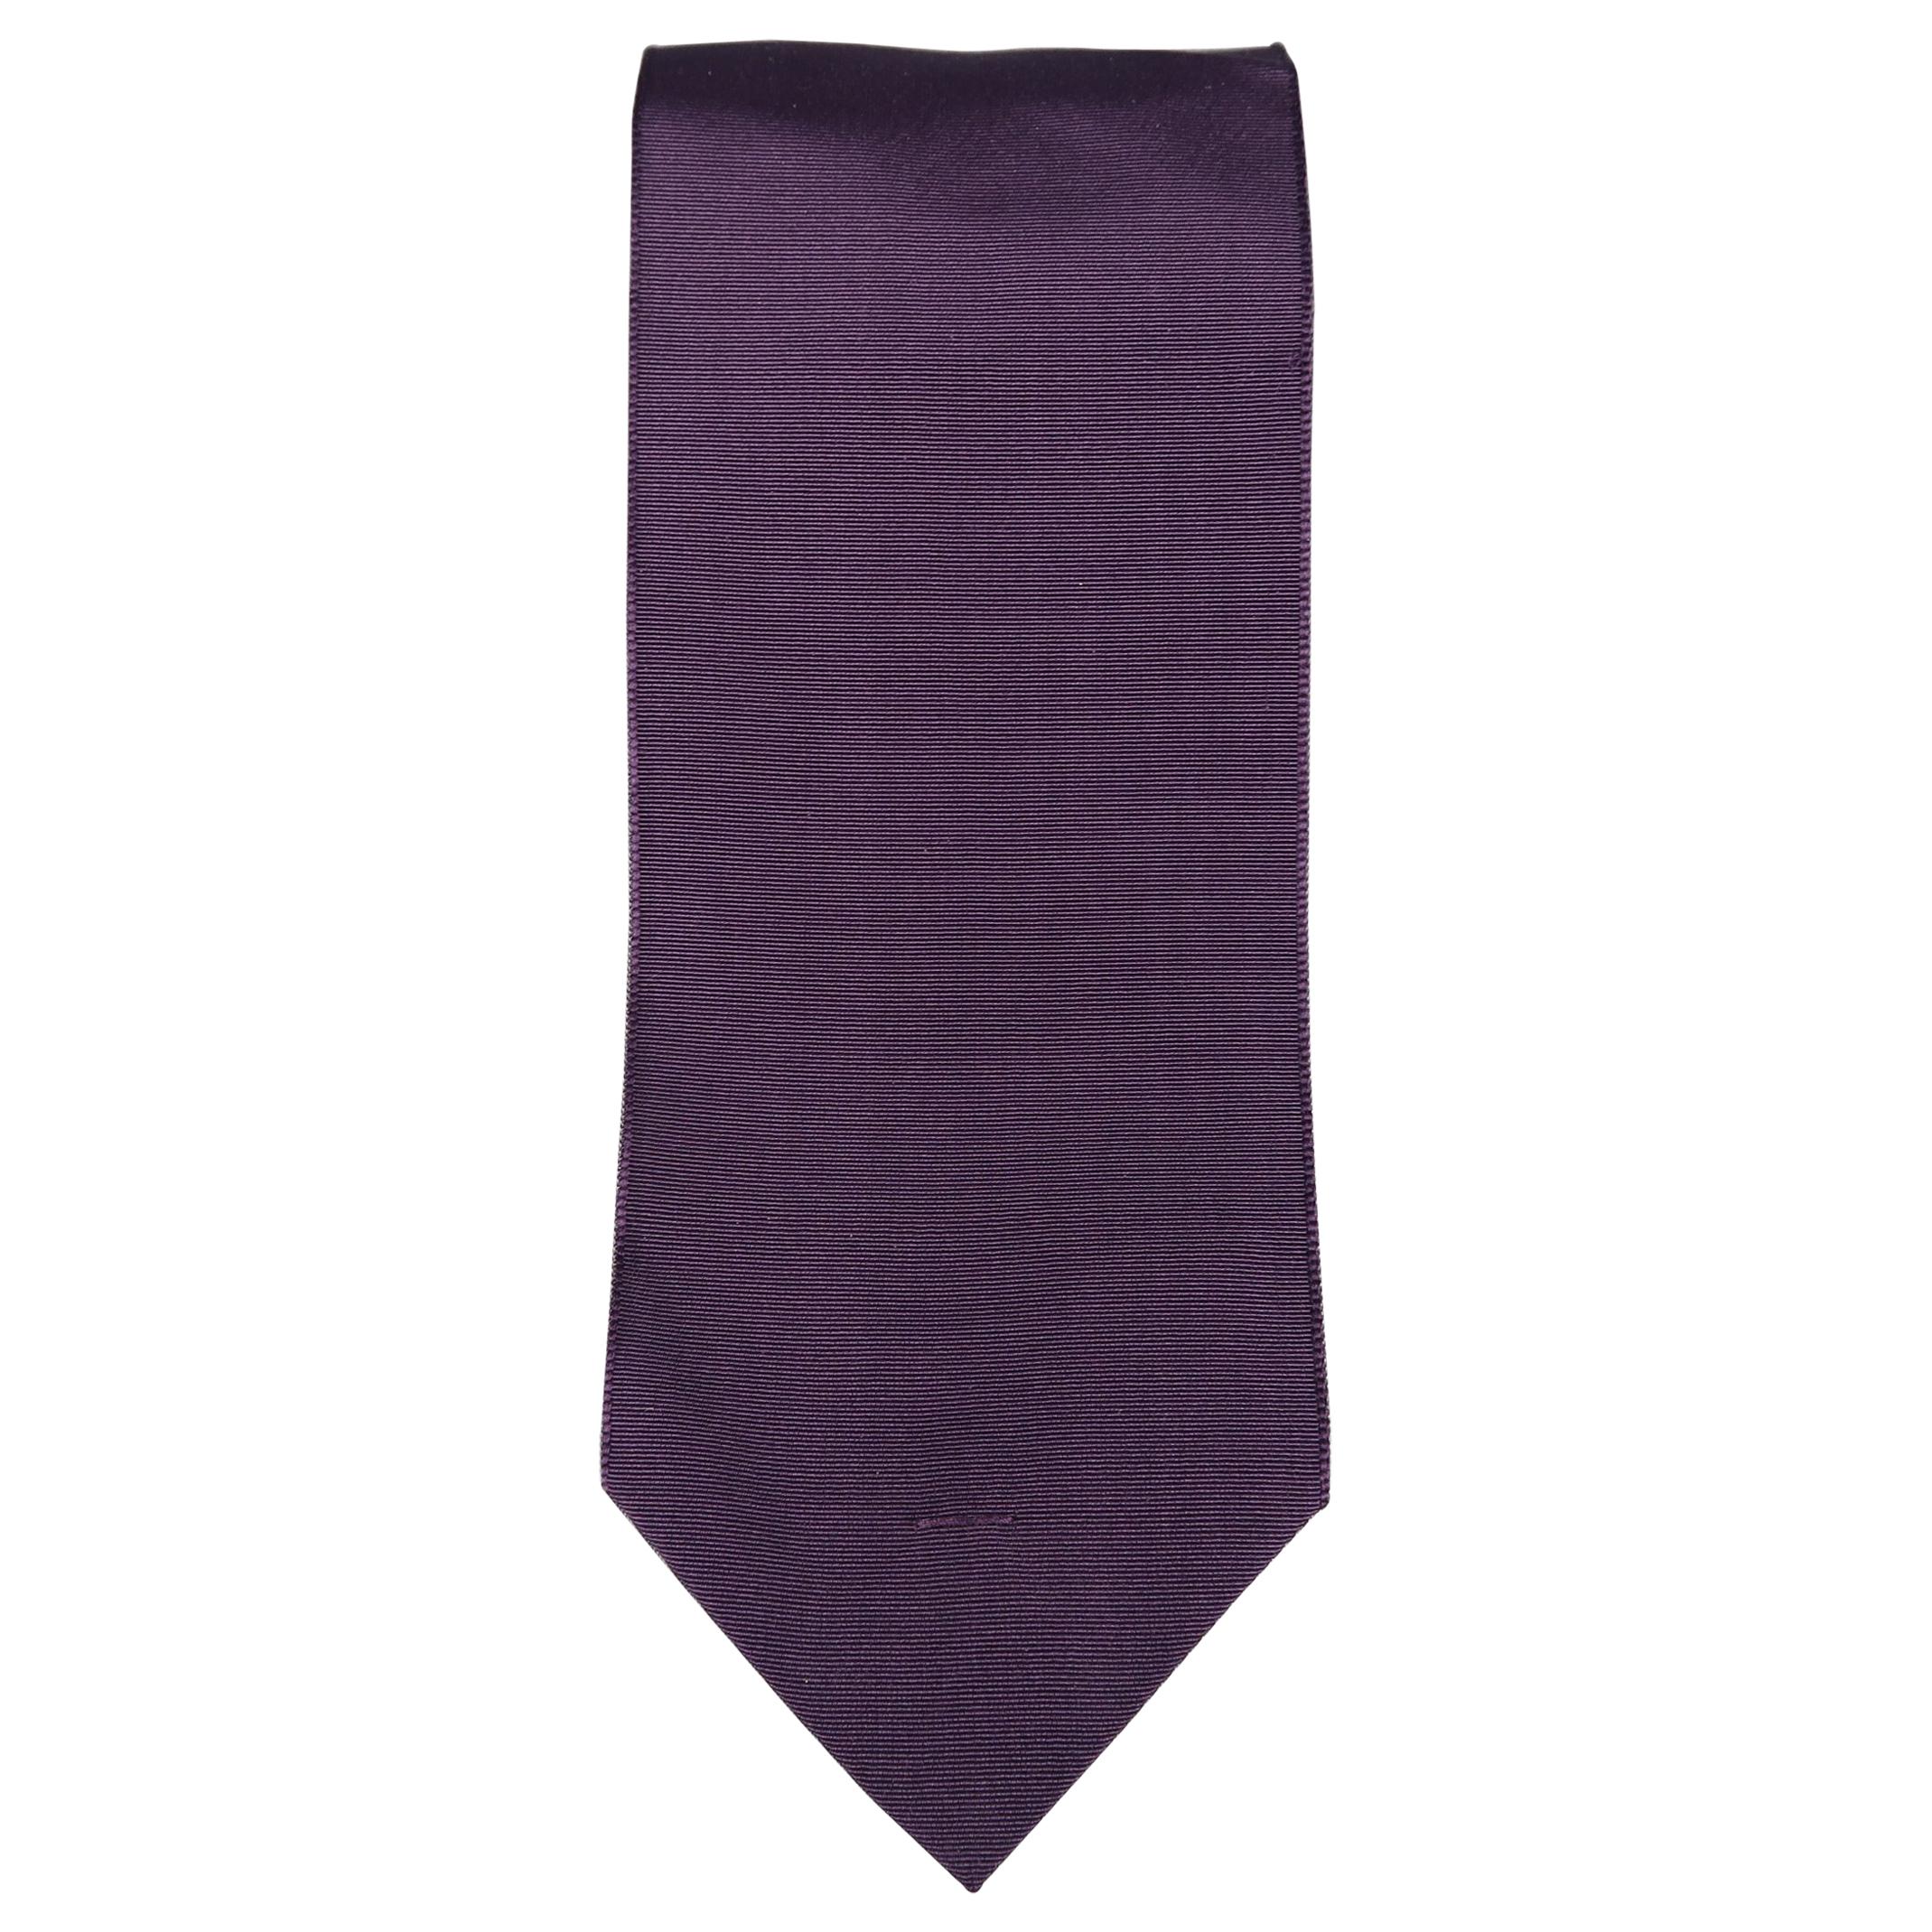 LANVIN Purple & Navy Tones Silk Tie